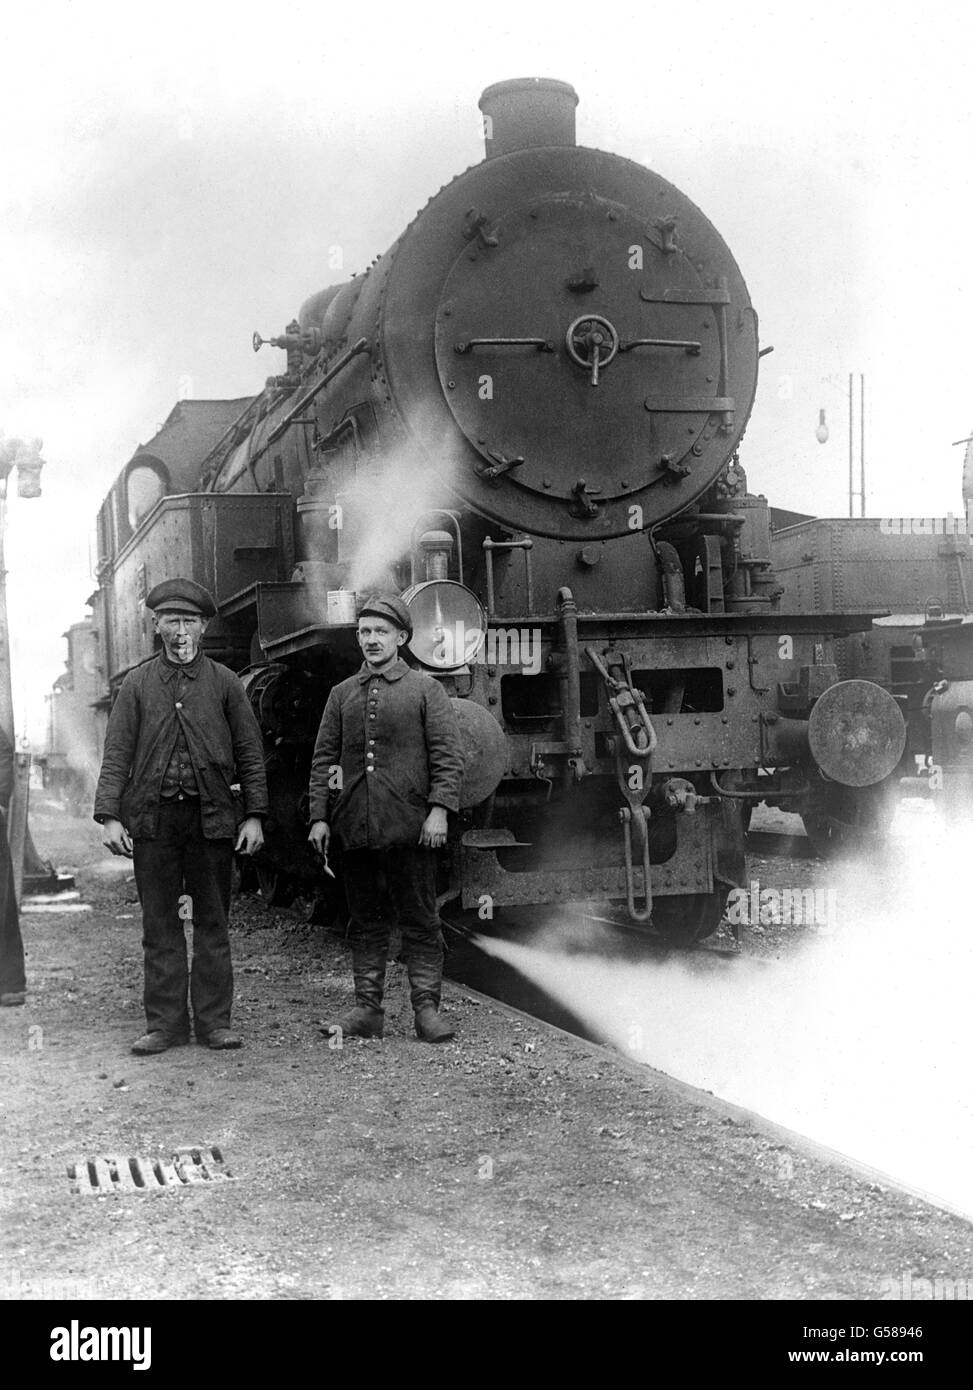 1919: Les cheminots allemands se tenant à côté d'un des moteurs à vapeur se sont rendus par les Allemands aux alliés conformément aux termes de l'Armistice de novembre 1918 qui a mis fin à la première Guerre mondiale. Banque D'Images